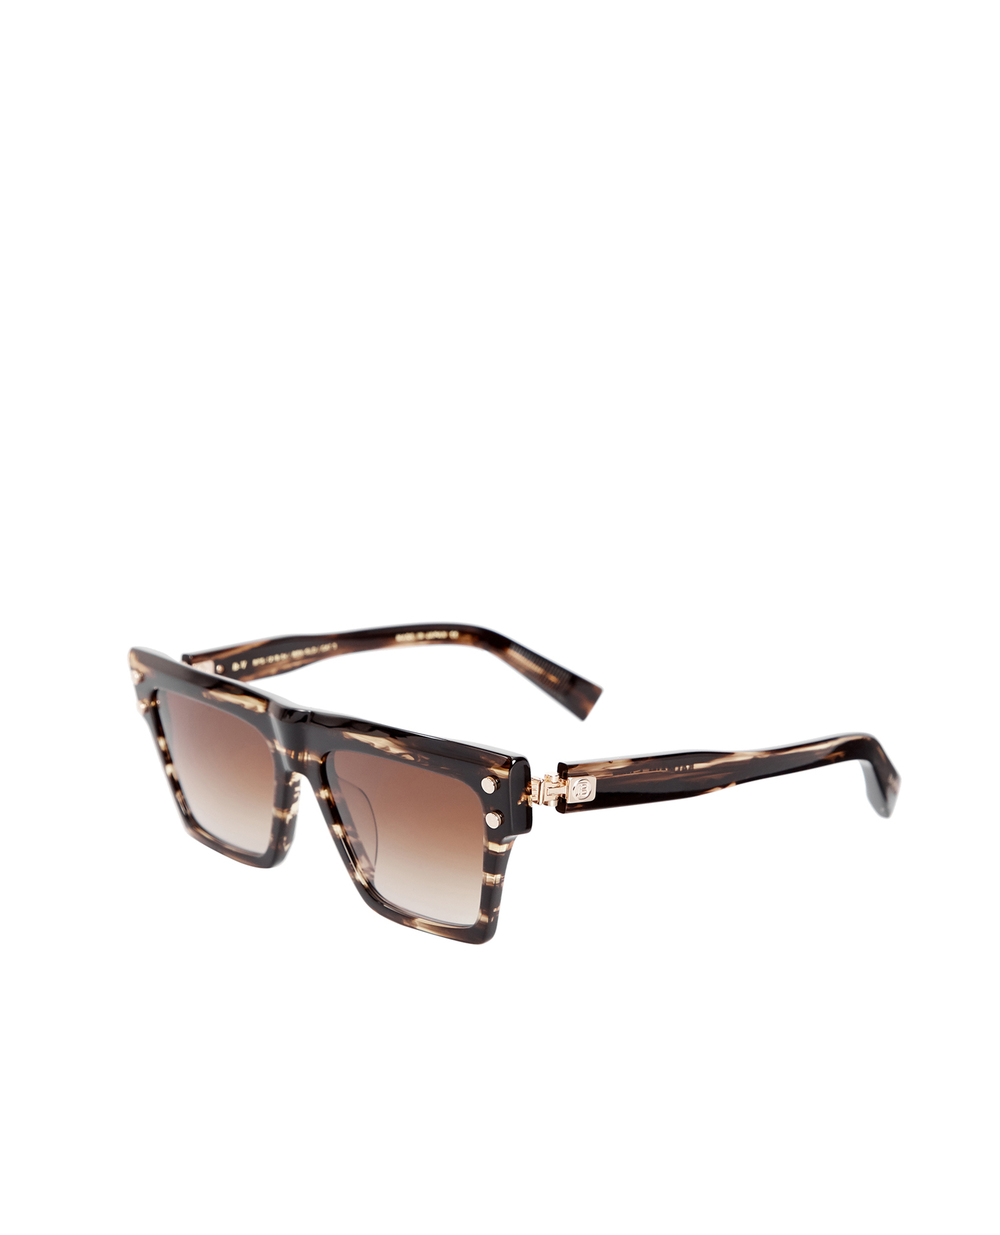 Солнцезащитные очки Balmain BPS-121B-54, коричневый цвет • Купить в интернет-магазине Kameron